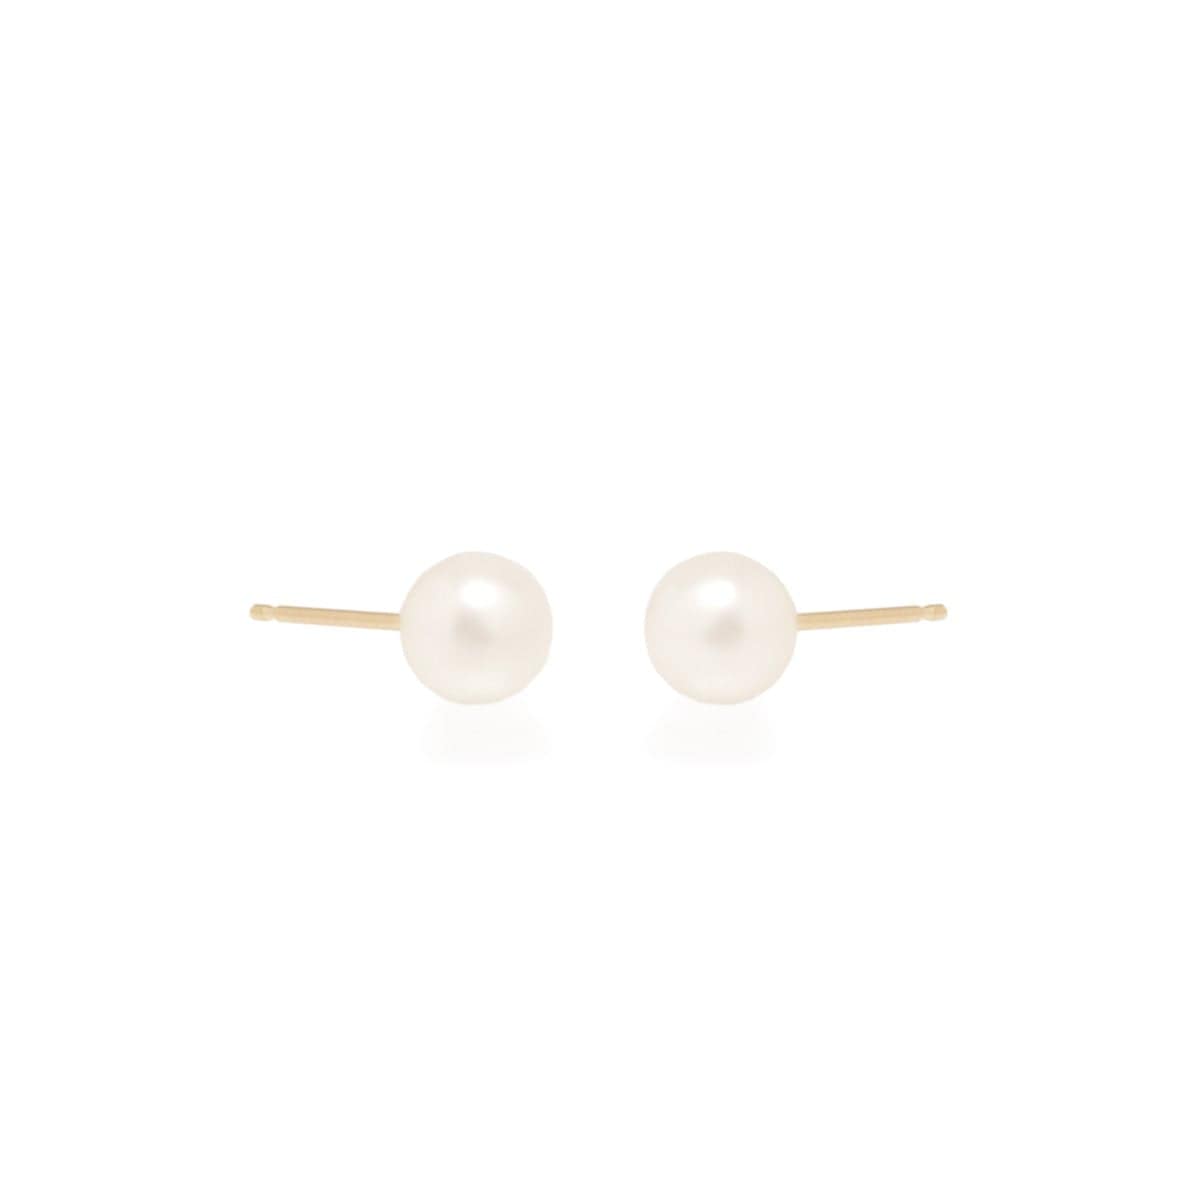 EAR-14K 14k Gold 6mm White Cultured Pearl Earrings